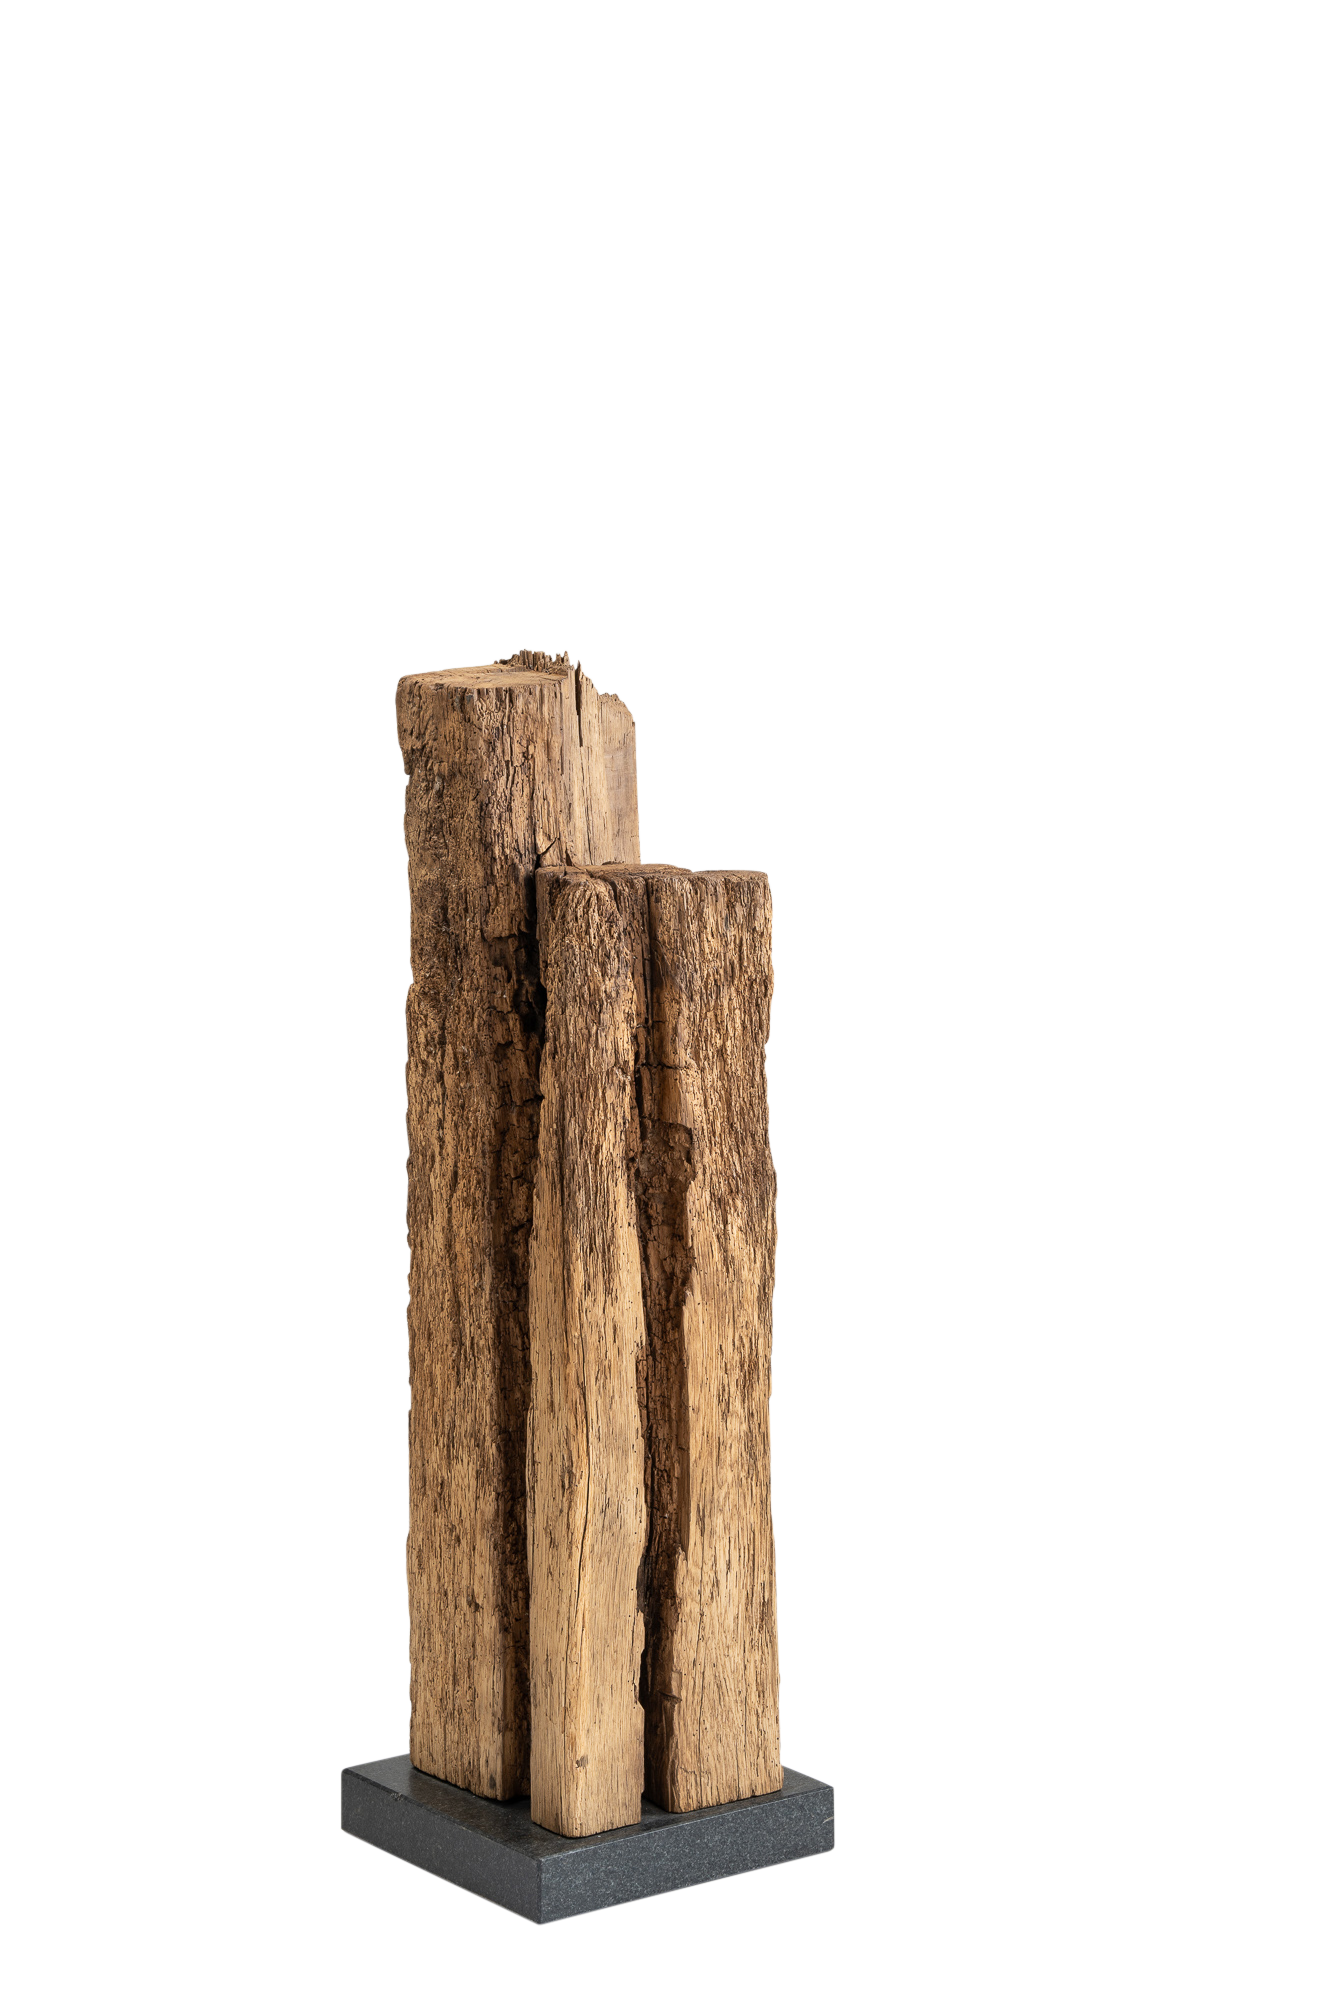 Eine Eichenholz-Skulptur, die auf einem steinernen Sockel steht. Die Skulptur zeigt eine abstrakte Form, die aus dem Eichenholz geschnitzt wurde. Die natürliche Maserung des Holzes ist sichtbar und verleiht der Skulptur eine warme und organische Ästhetik. Die Skulptur steht stabil auf einem massiven Steinsockel, der ihr eine solide Basis verleiht. Die Kombination aus Holz und Stein schafft eine harmonische Verbindung von Natur und Handwerkskunst.